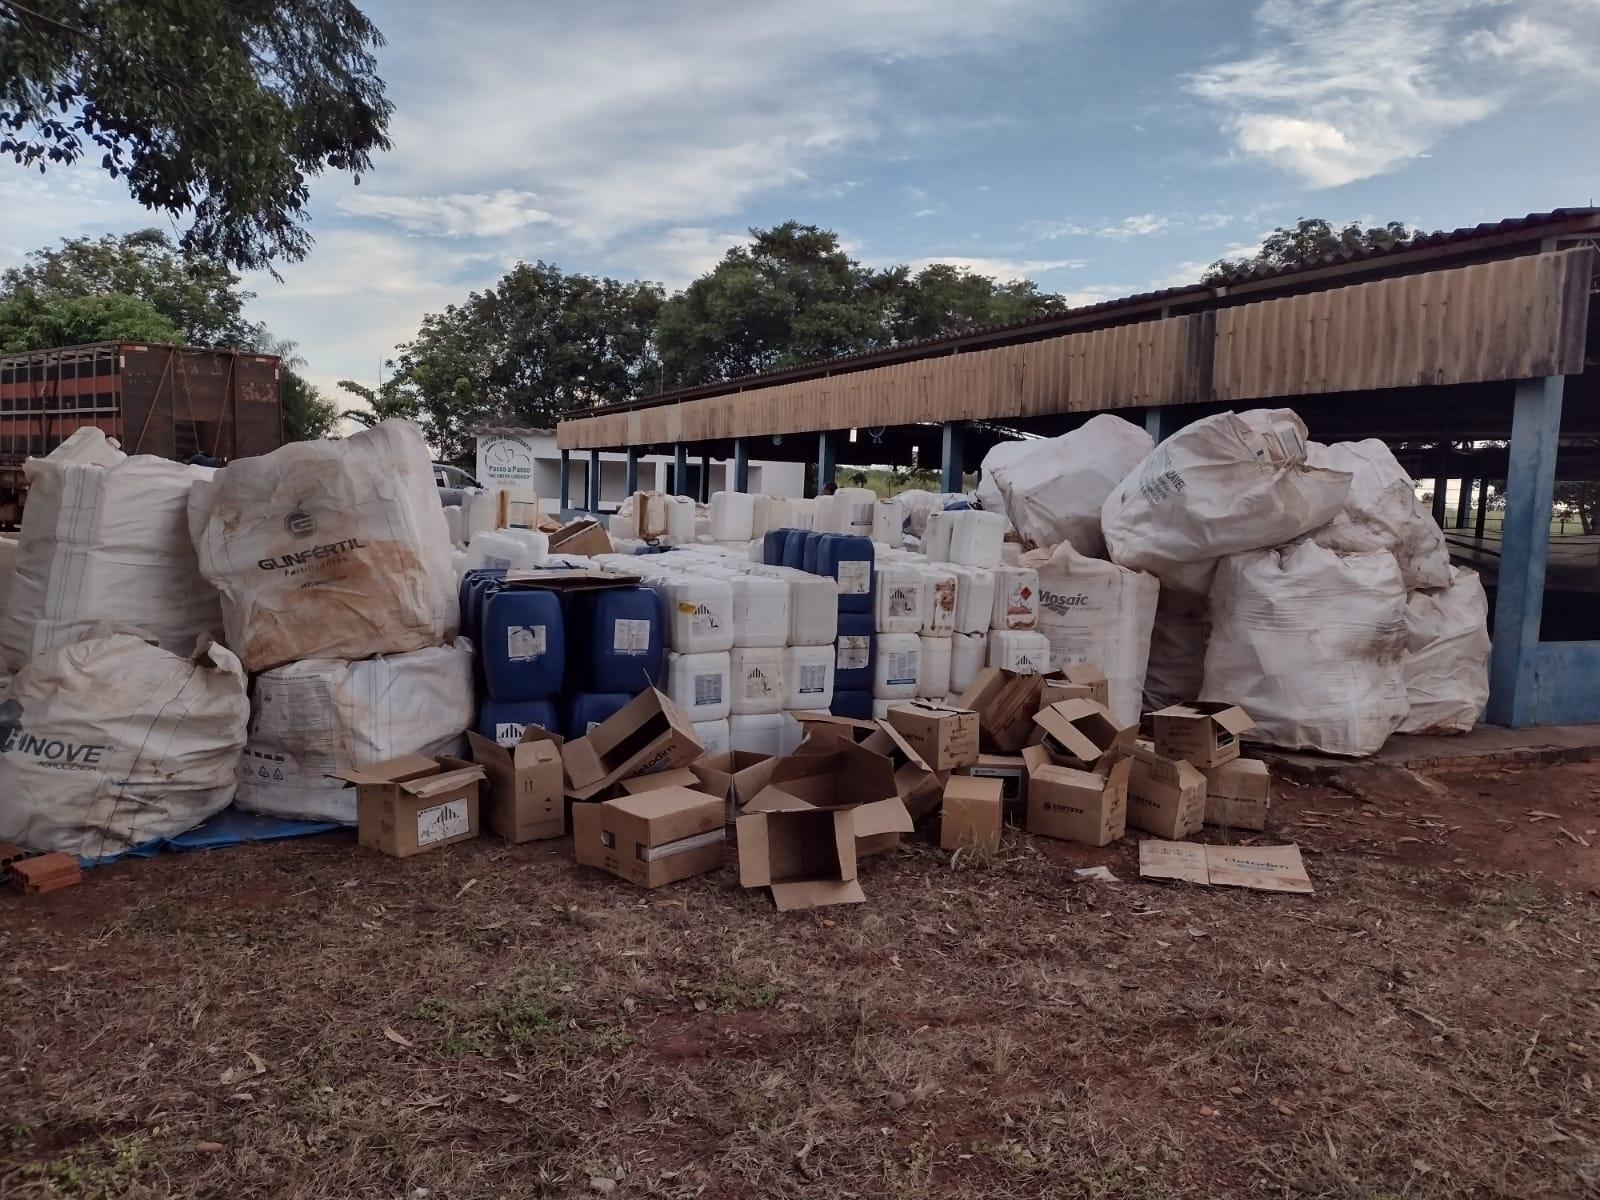 Sindicato Rural recebe mais de 2 mil embalagens vazias de agrotóxico em ação itinerante